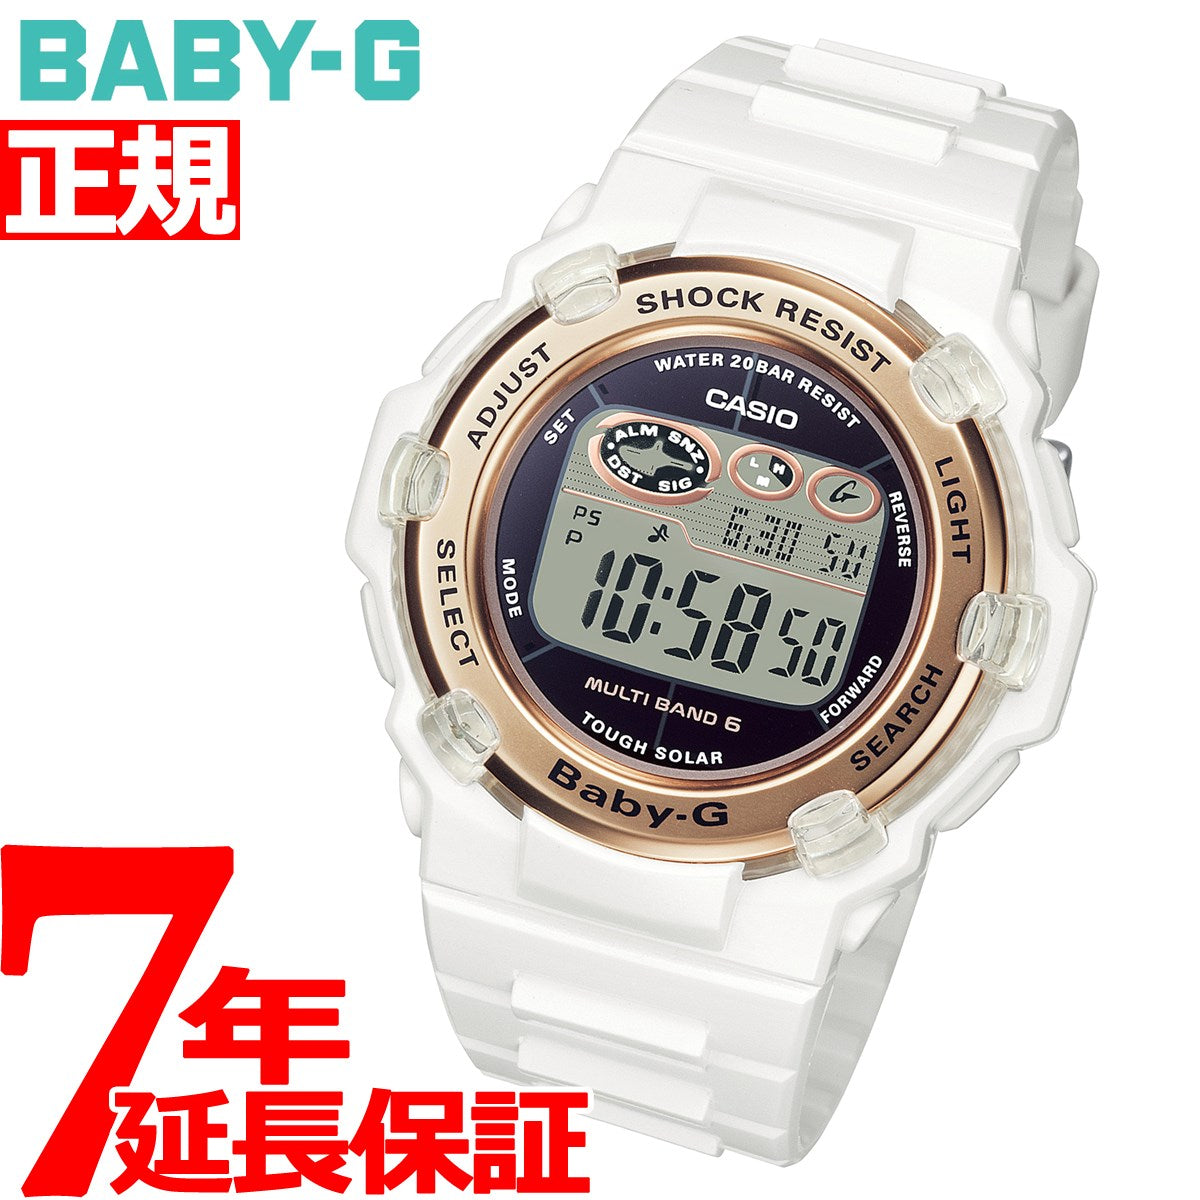 M2969◇カシオ腕時計 ベビージー BGR-3003U-7AJF レディース - 腕時計 